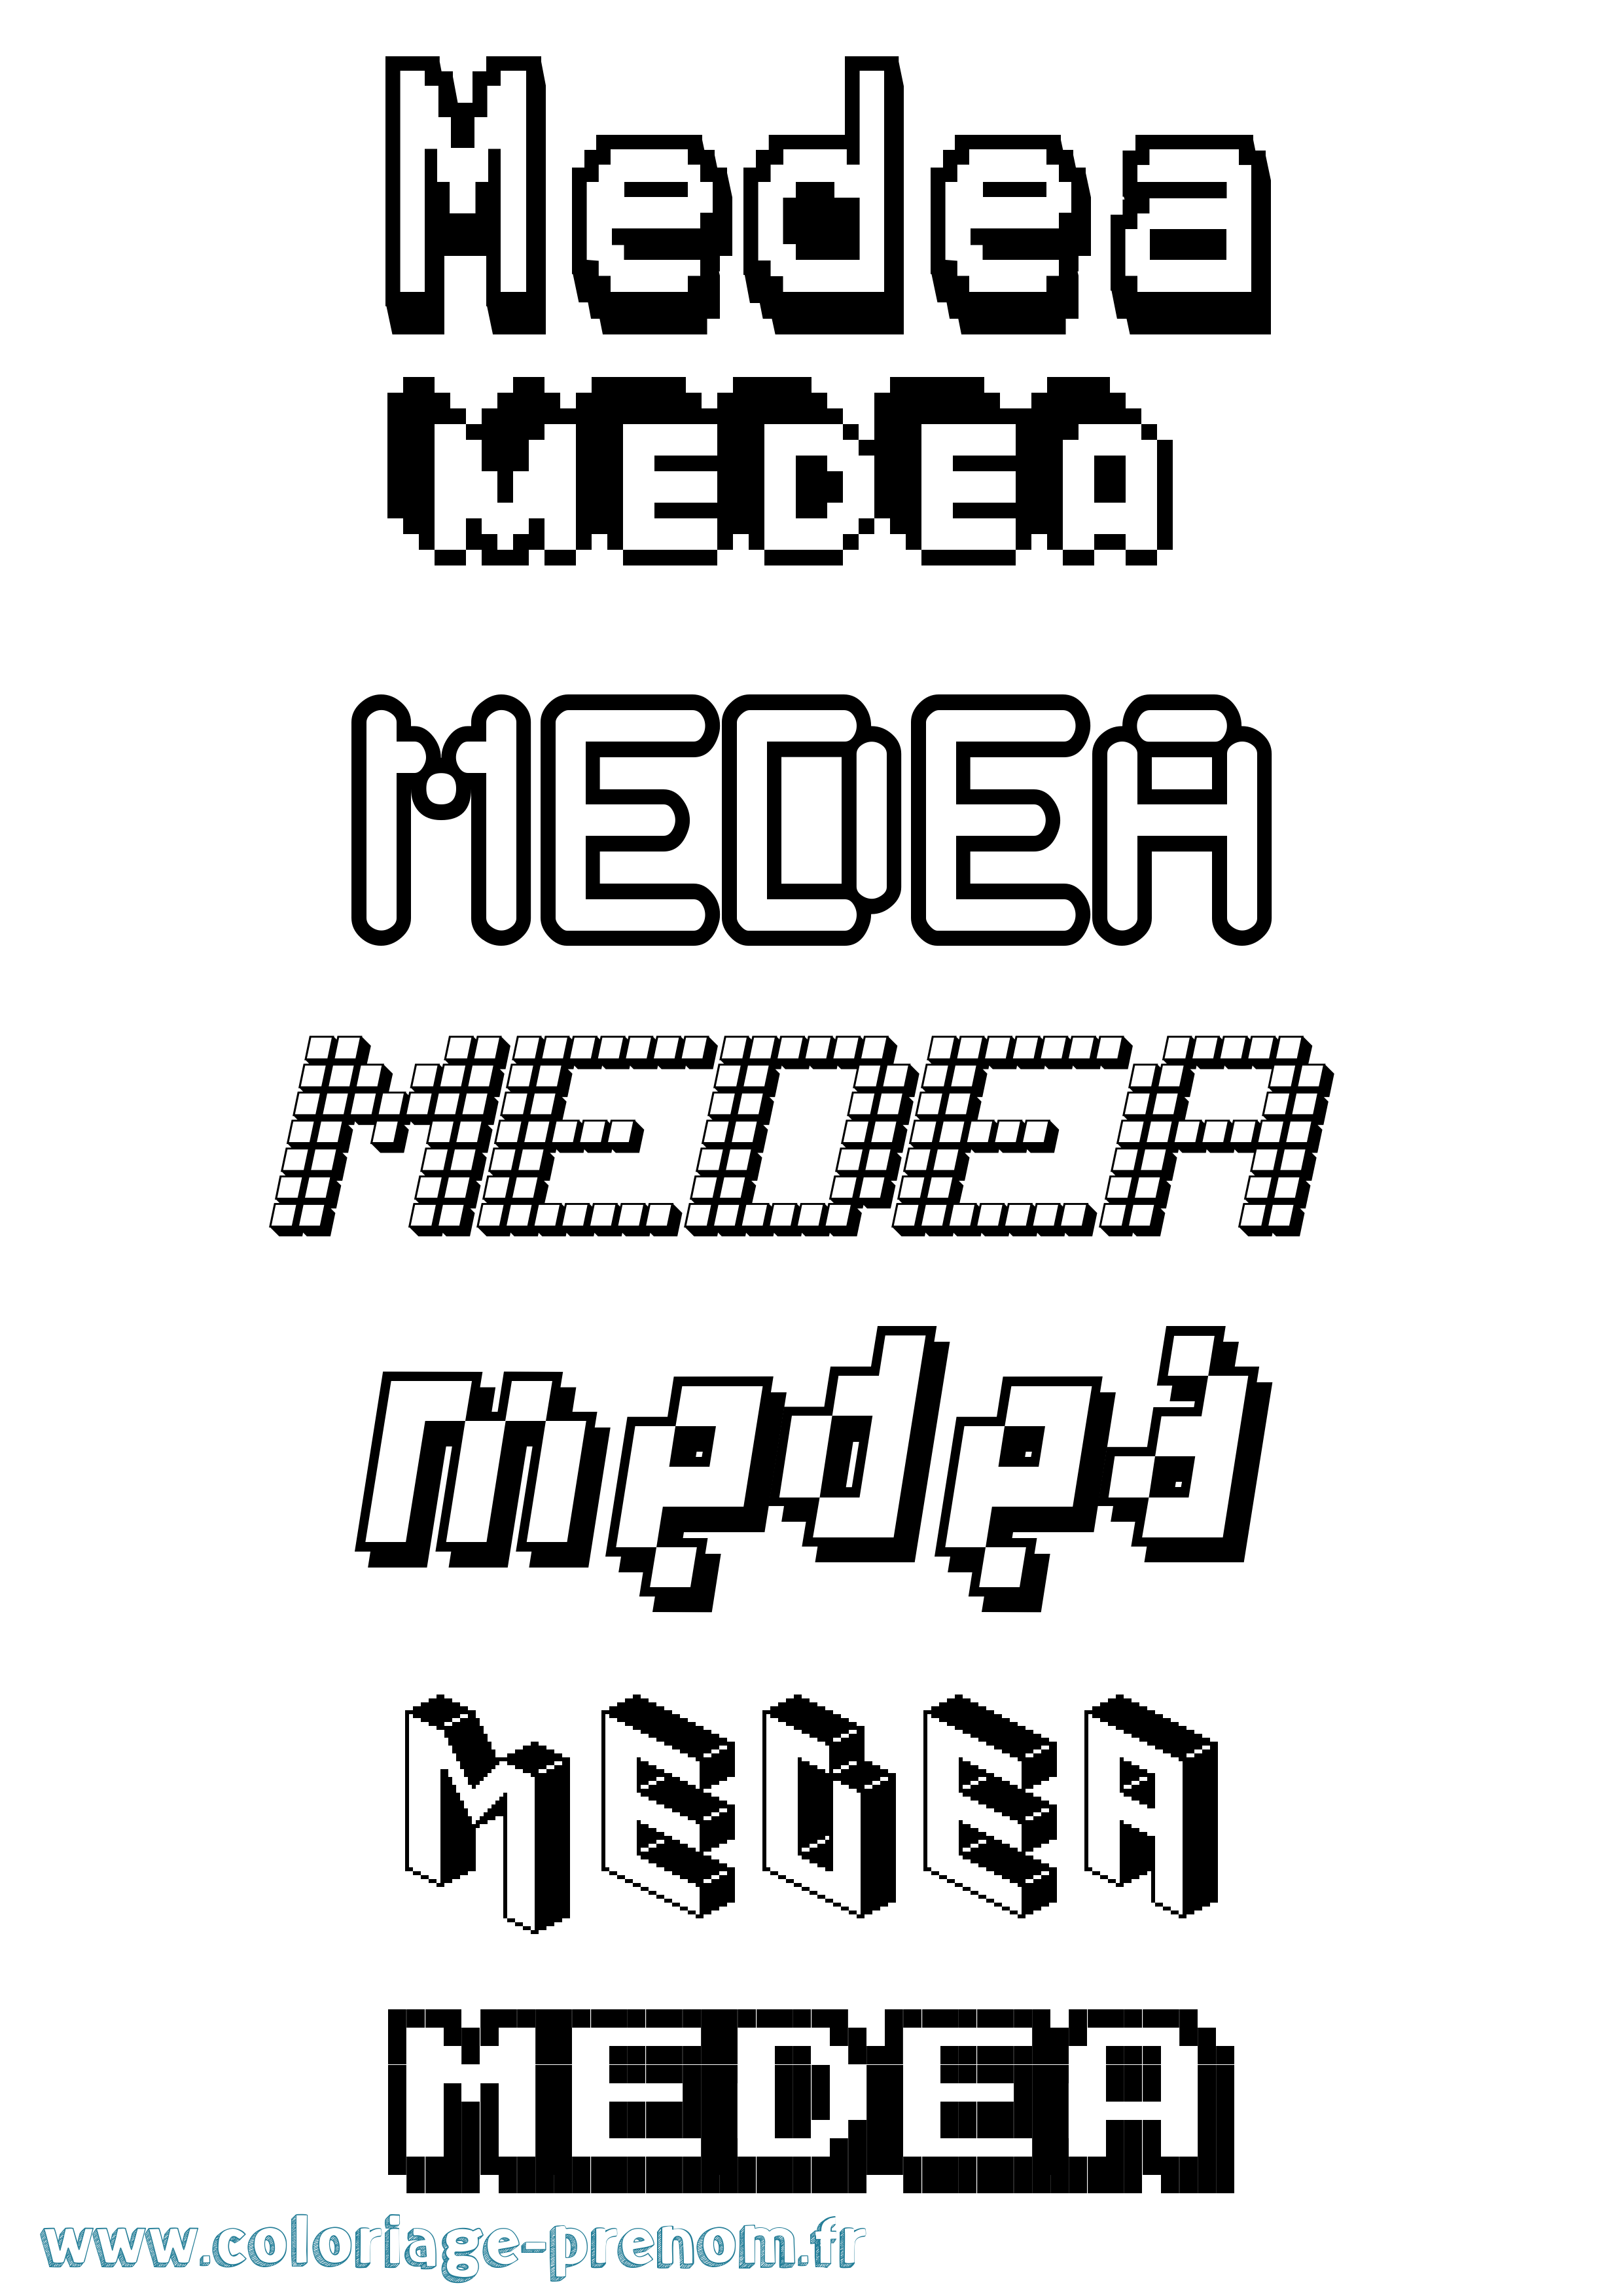 Coloriage prénom Medea Pixel